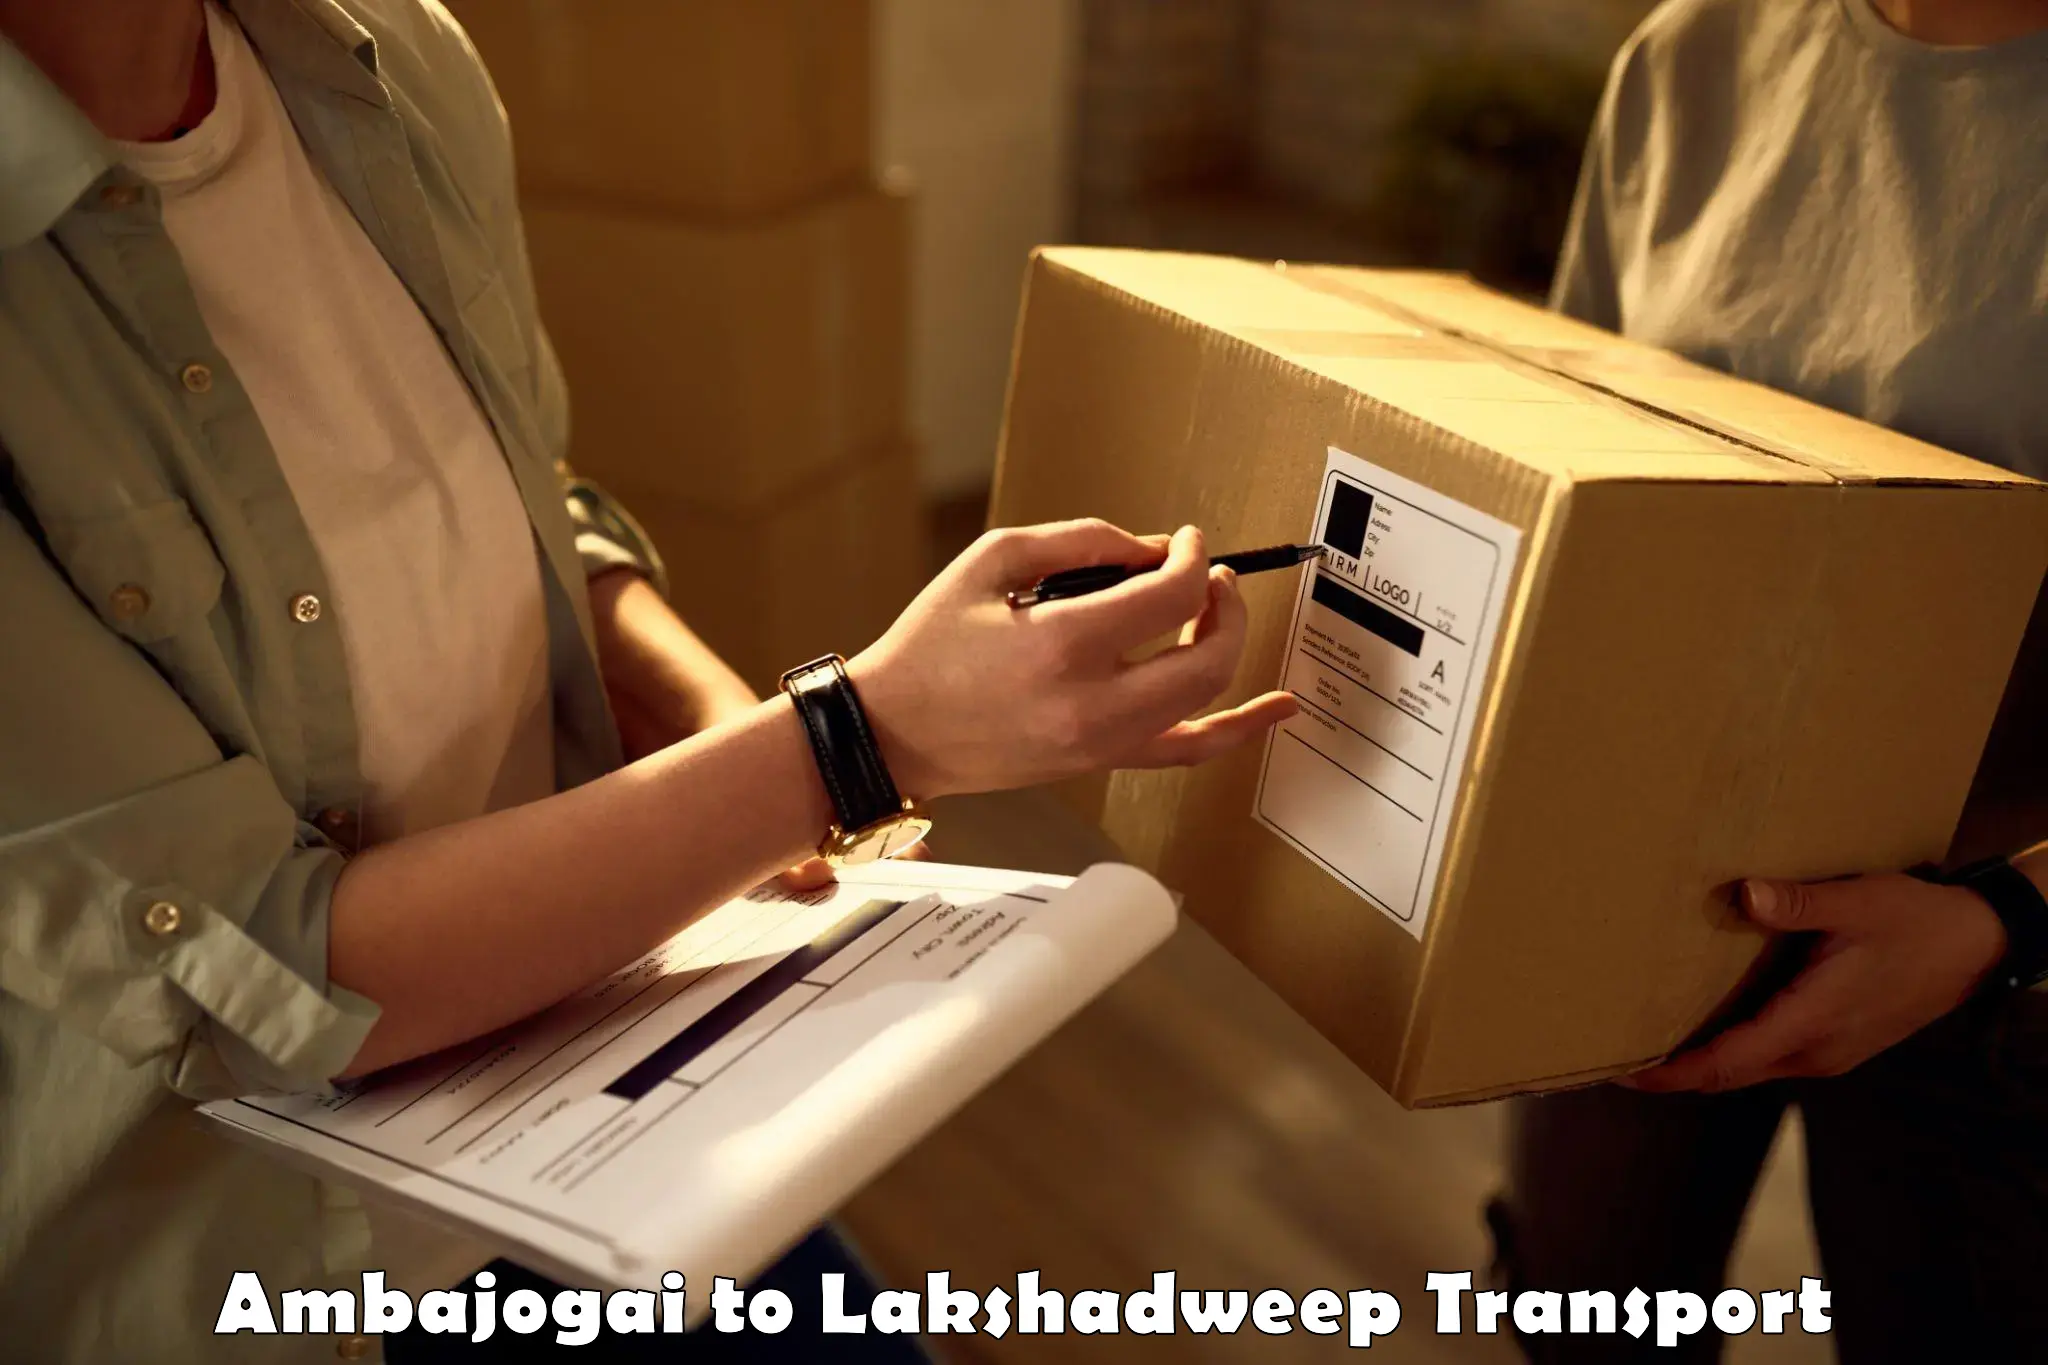 Transport in sharing Ambajogai to Lakshadweep